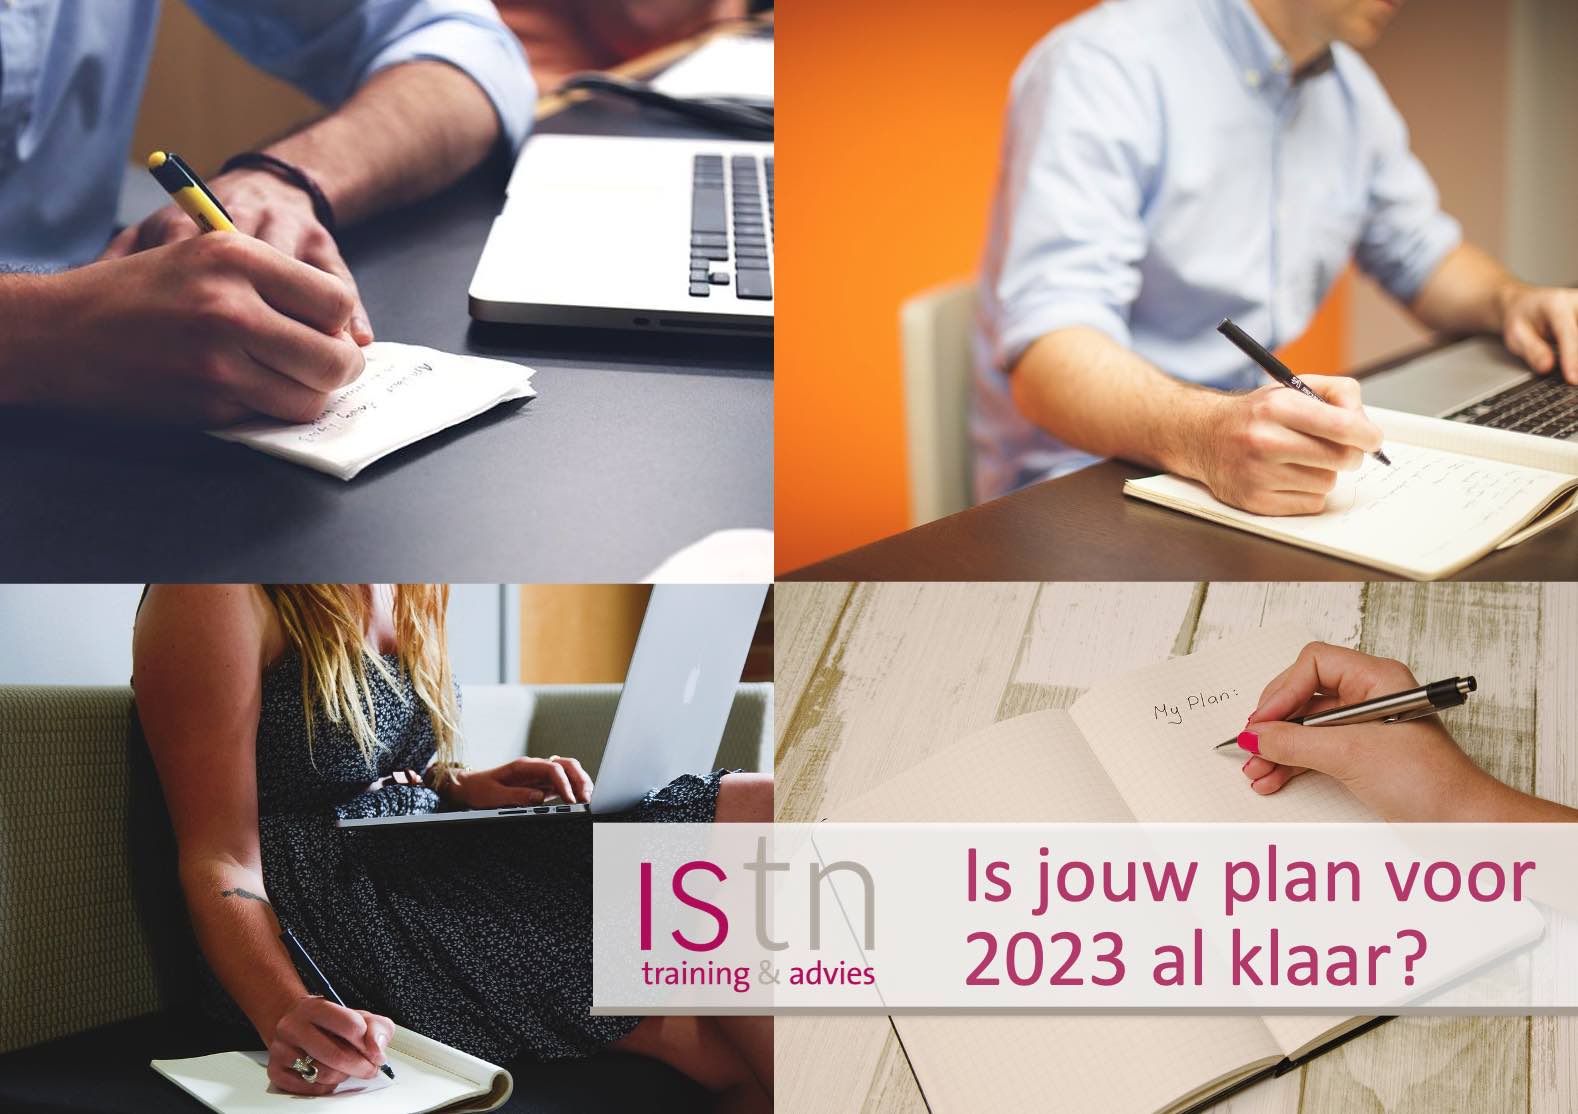 Heb jij je plan voor 2023 al klaar? Lees deze verkooptip van ISTN